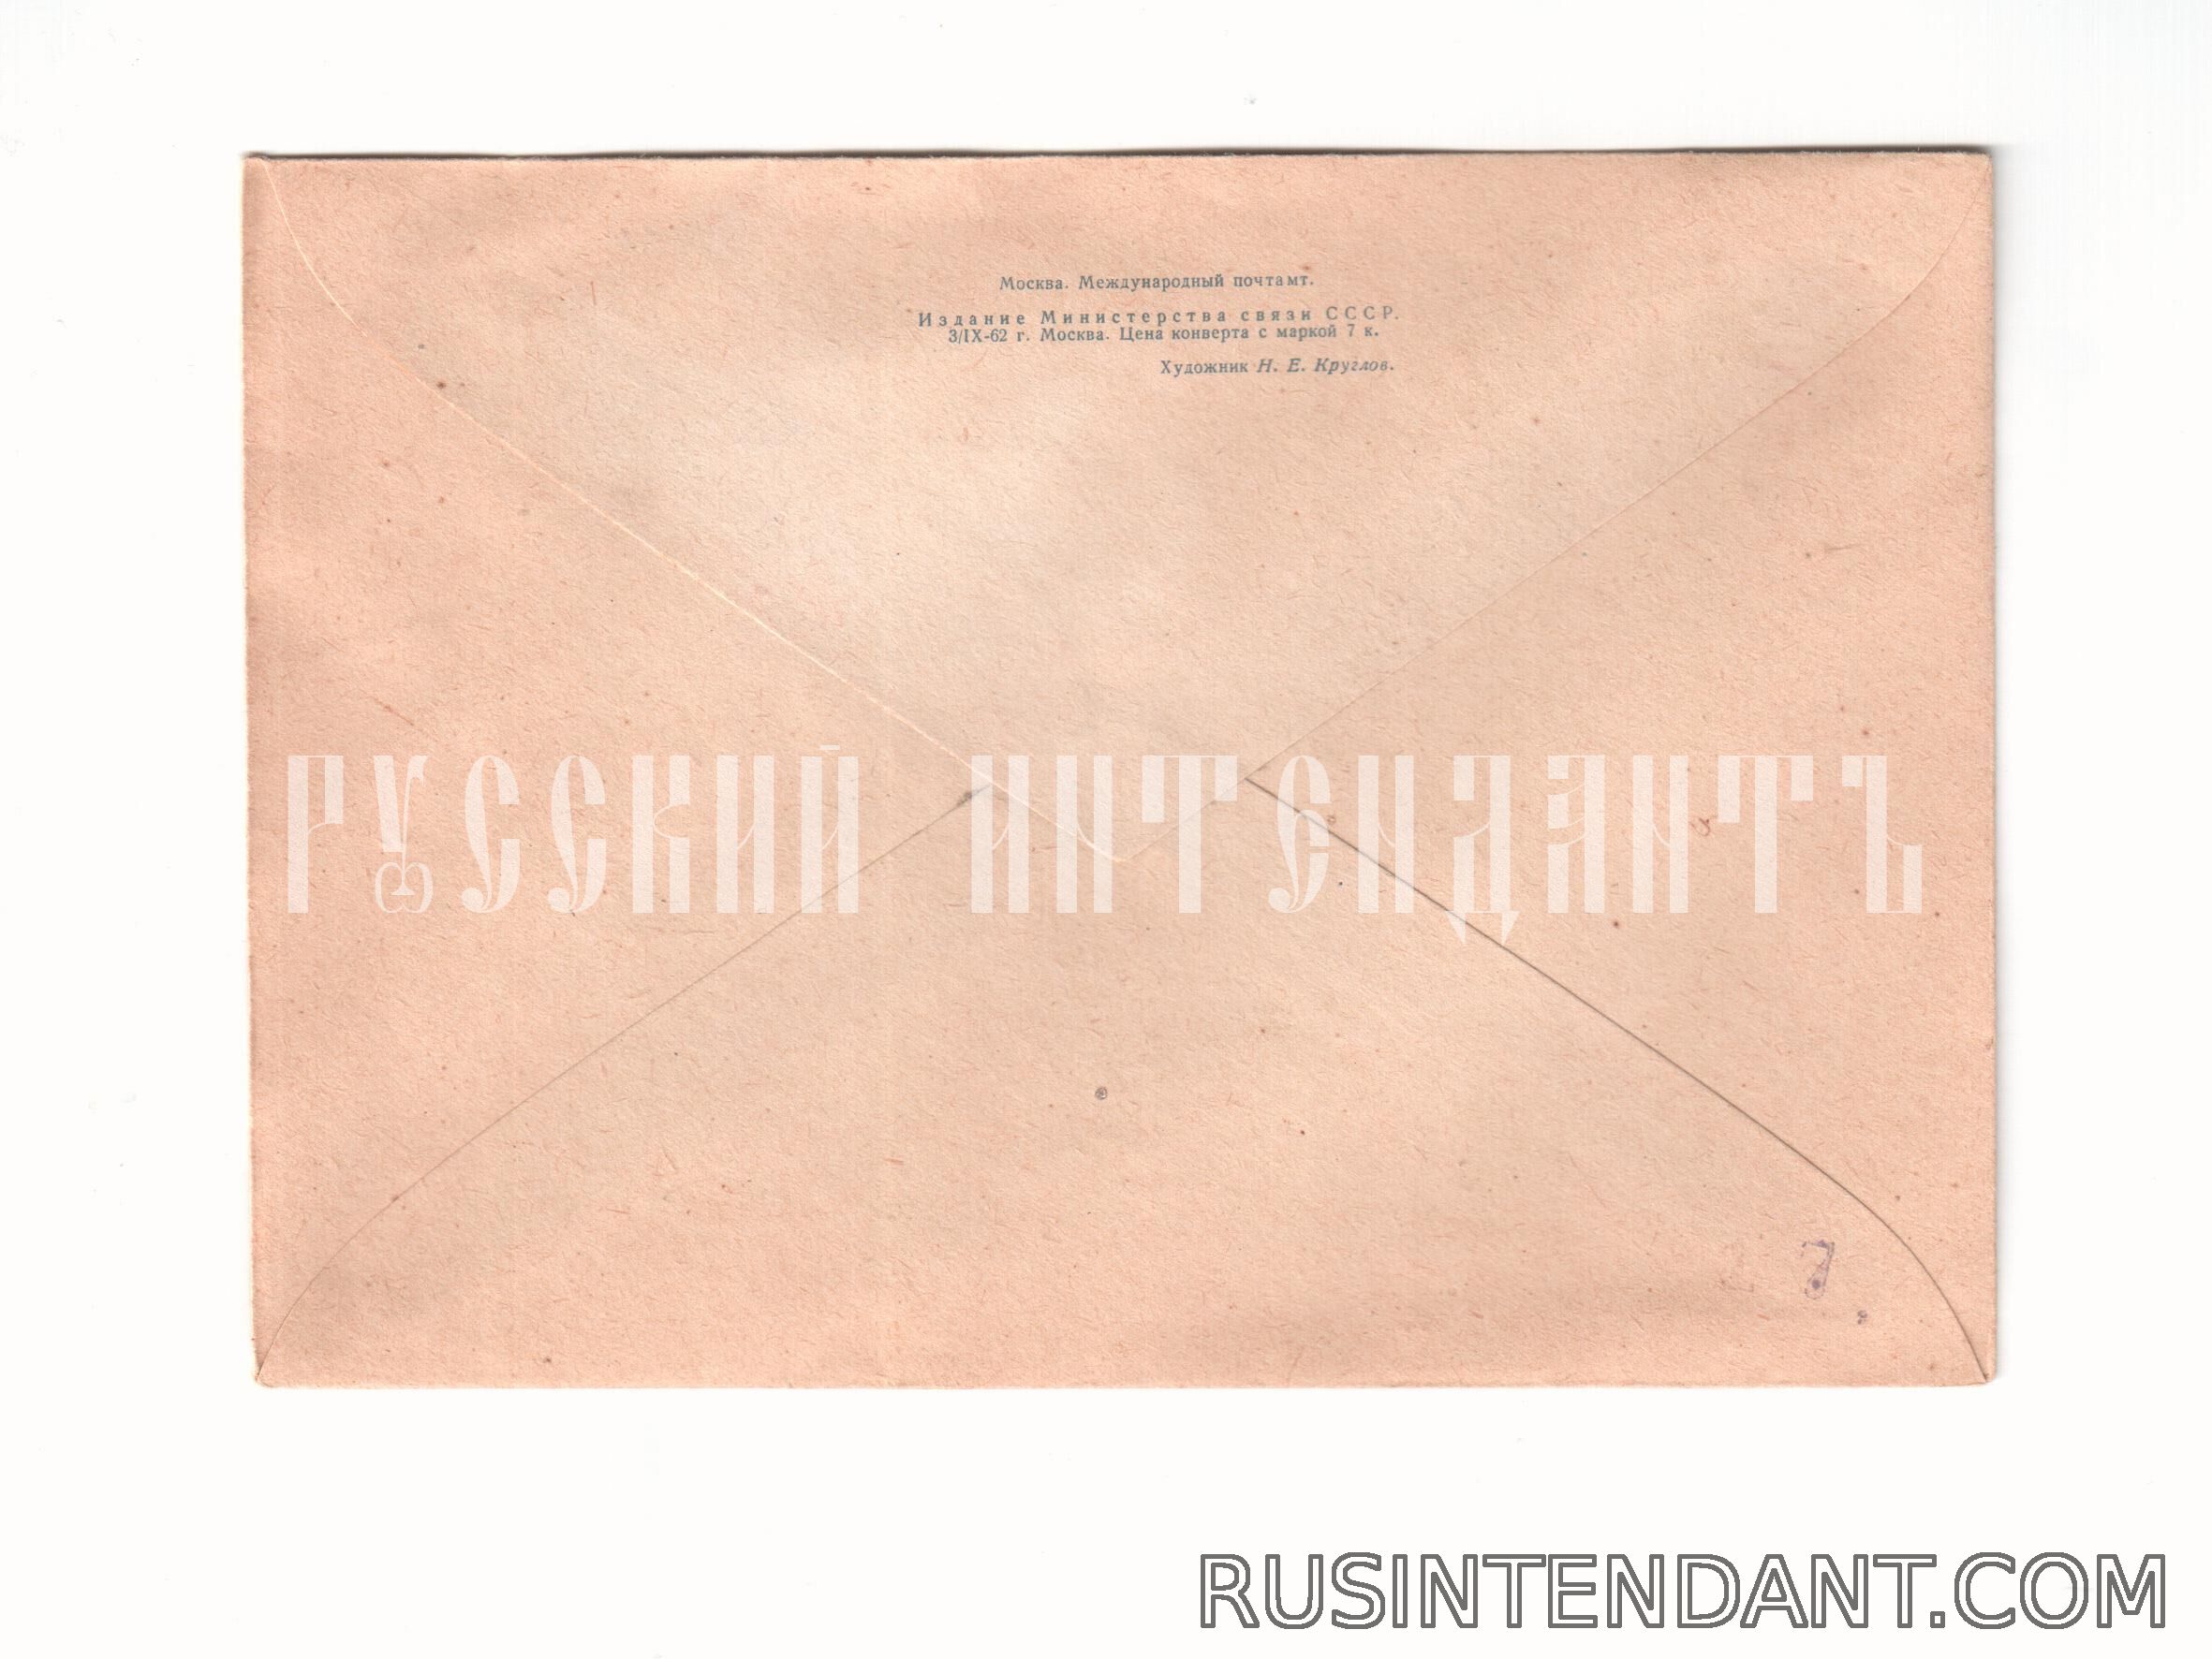 Фото 2: Почтовое спецгашение «Международный почтамт в Москве» 